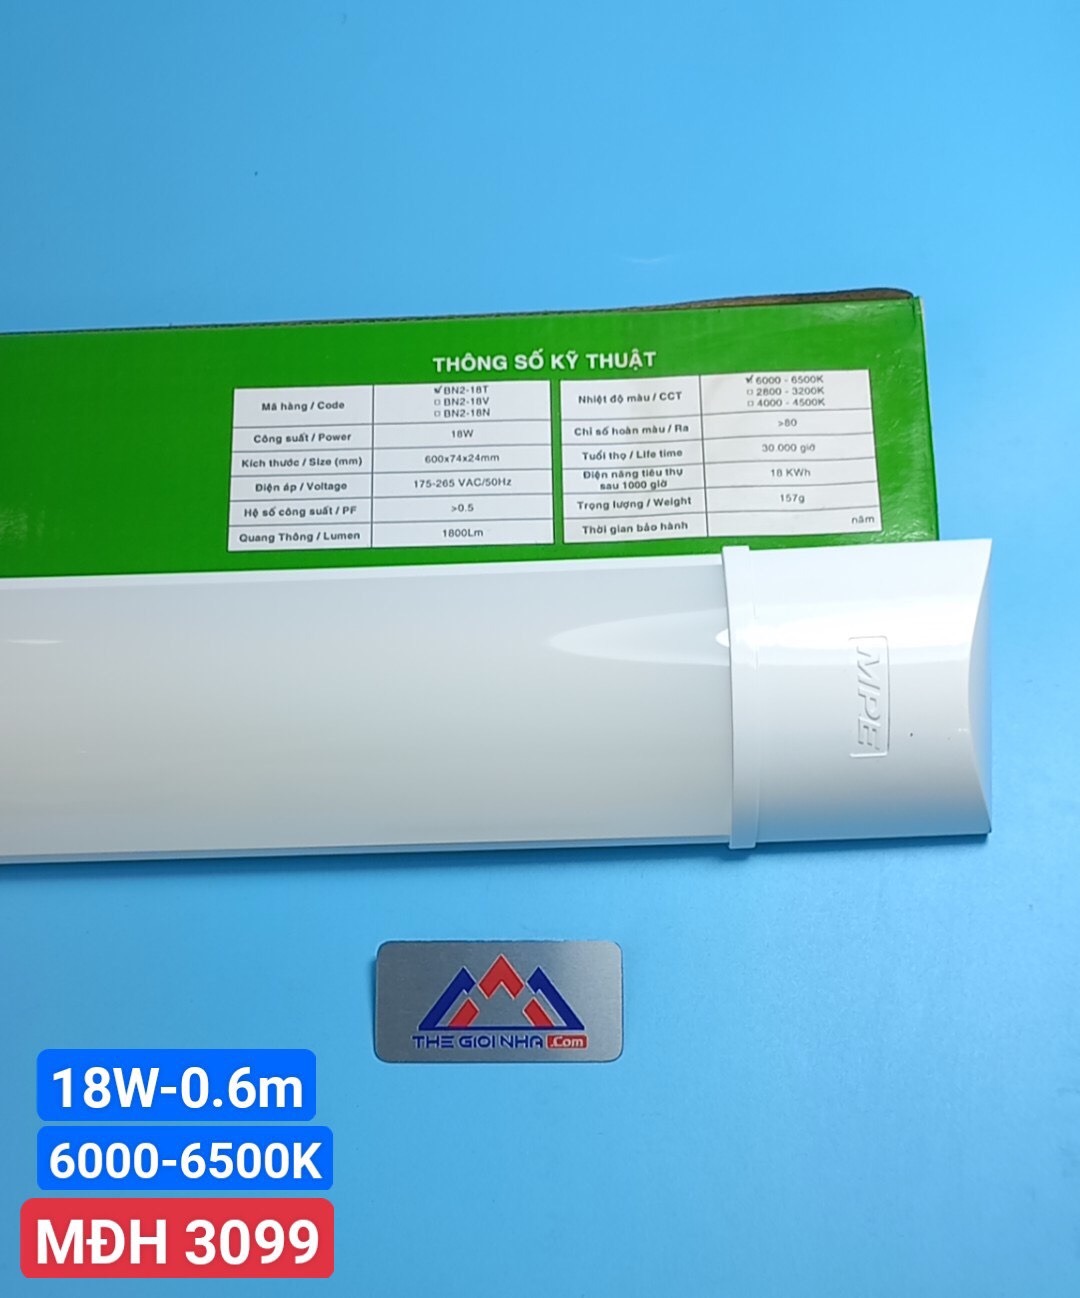 Đèn led bán nguyệt nhựa 6 tấc 18W, MPE BN2-18T, ánh sáng trắng, đóng gói 1 cái/hộp, 12 cái/thùng